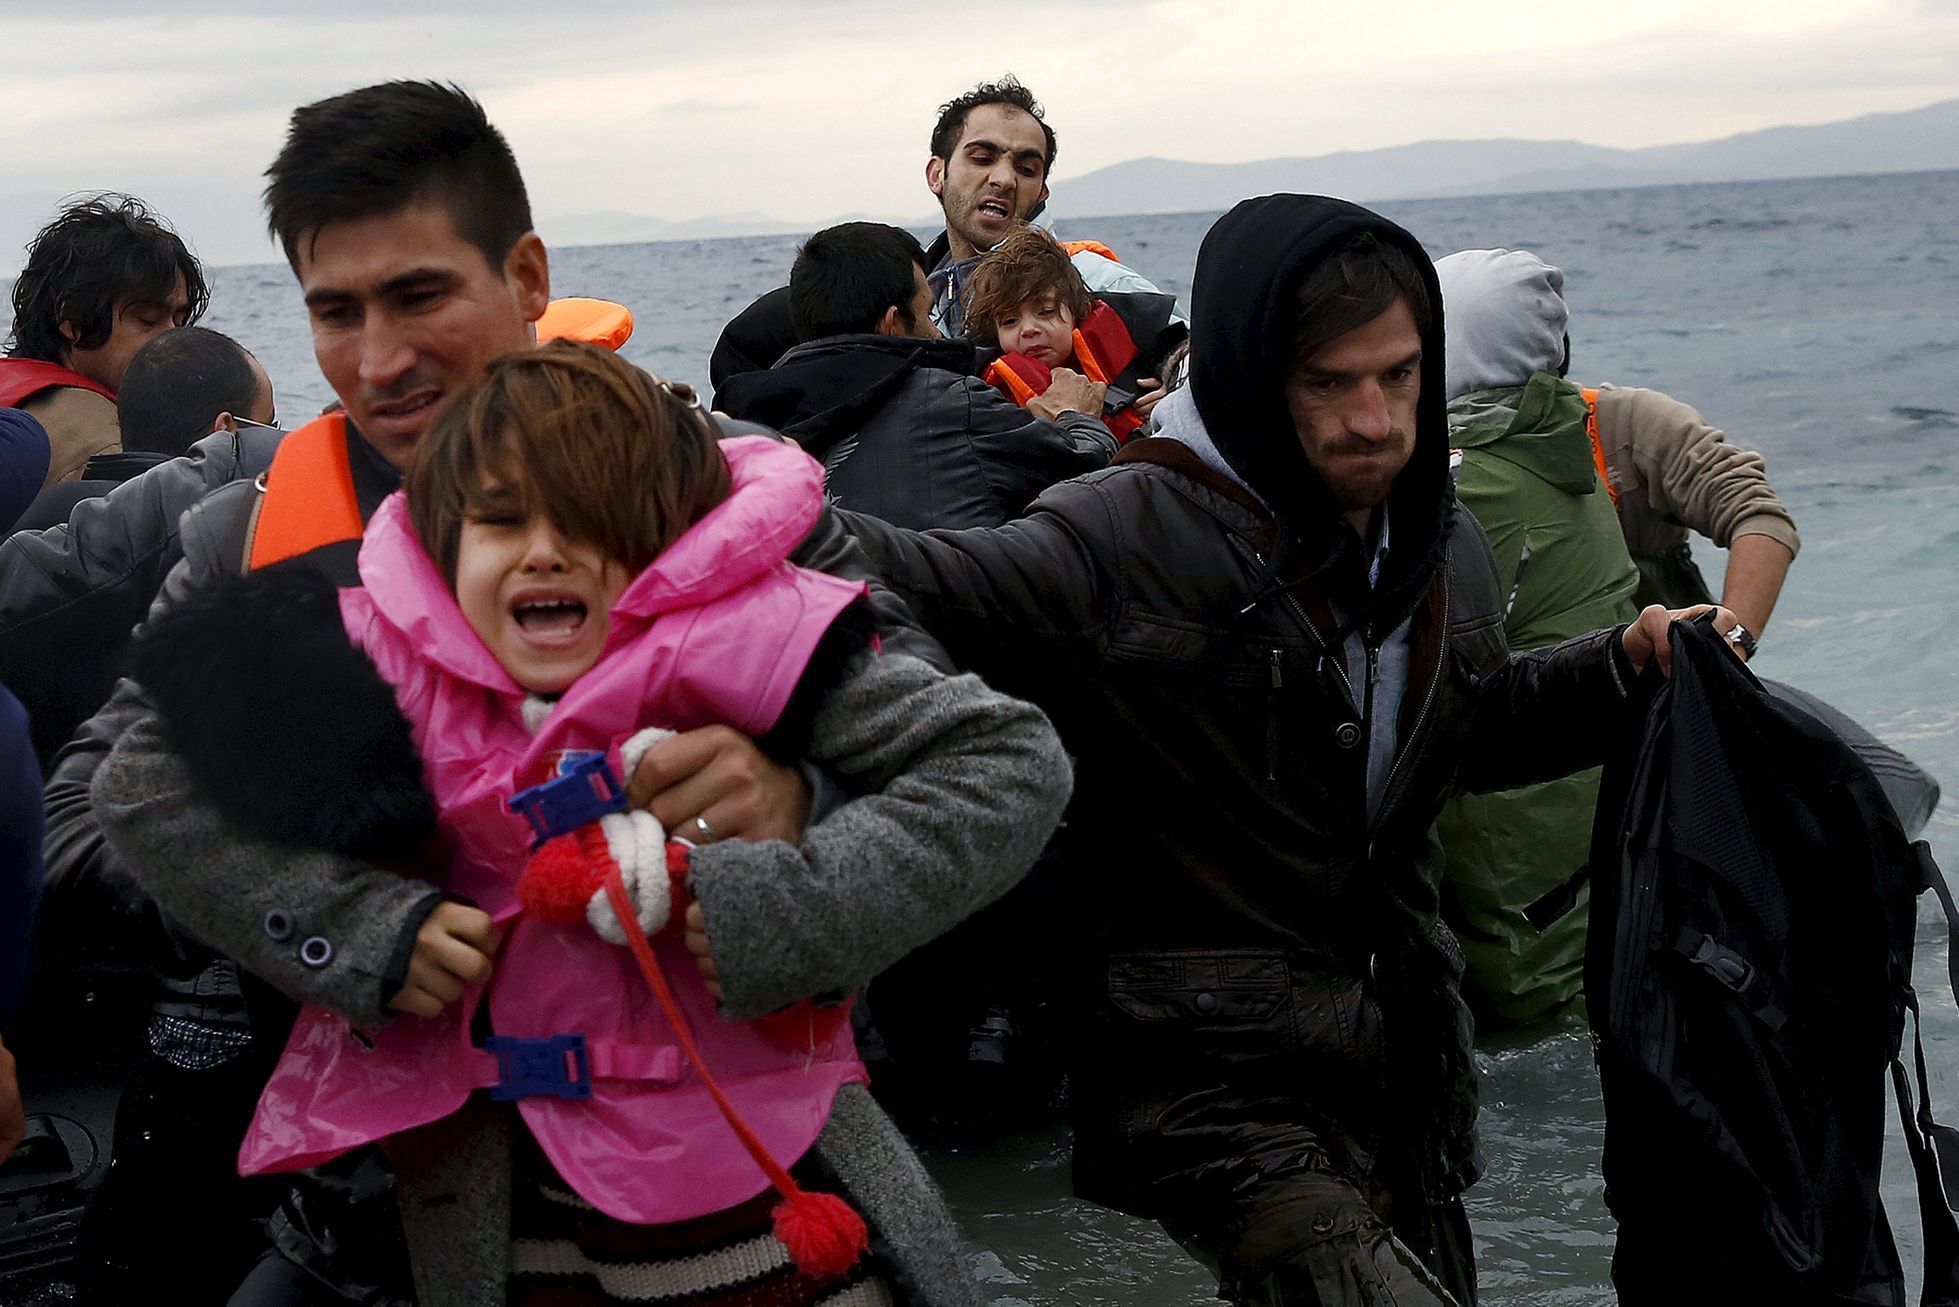 Uprchlíci - Řecko - Lesbos